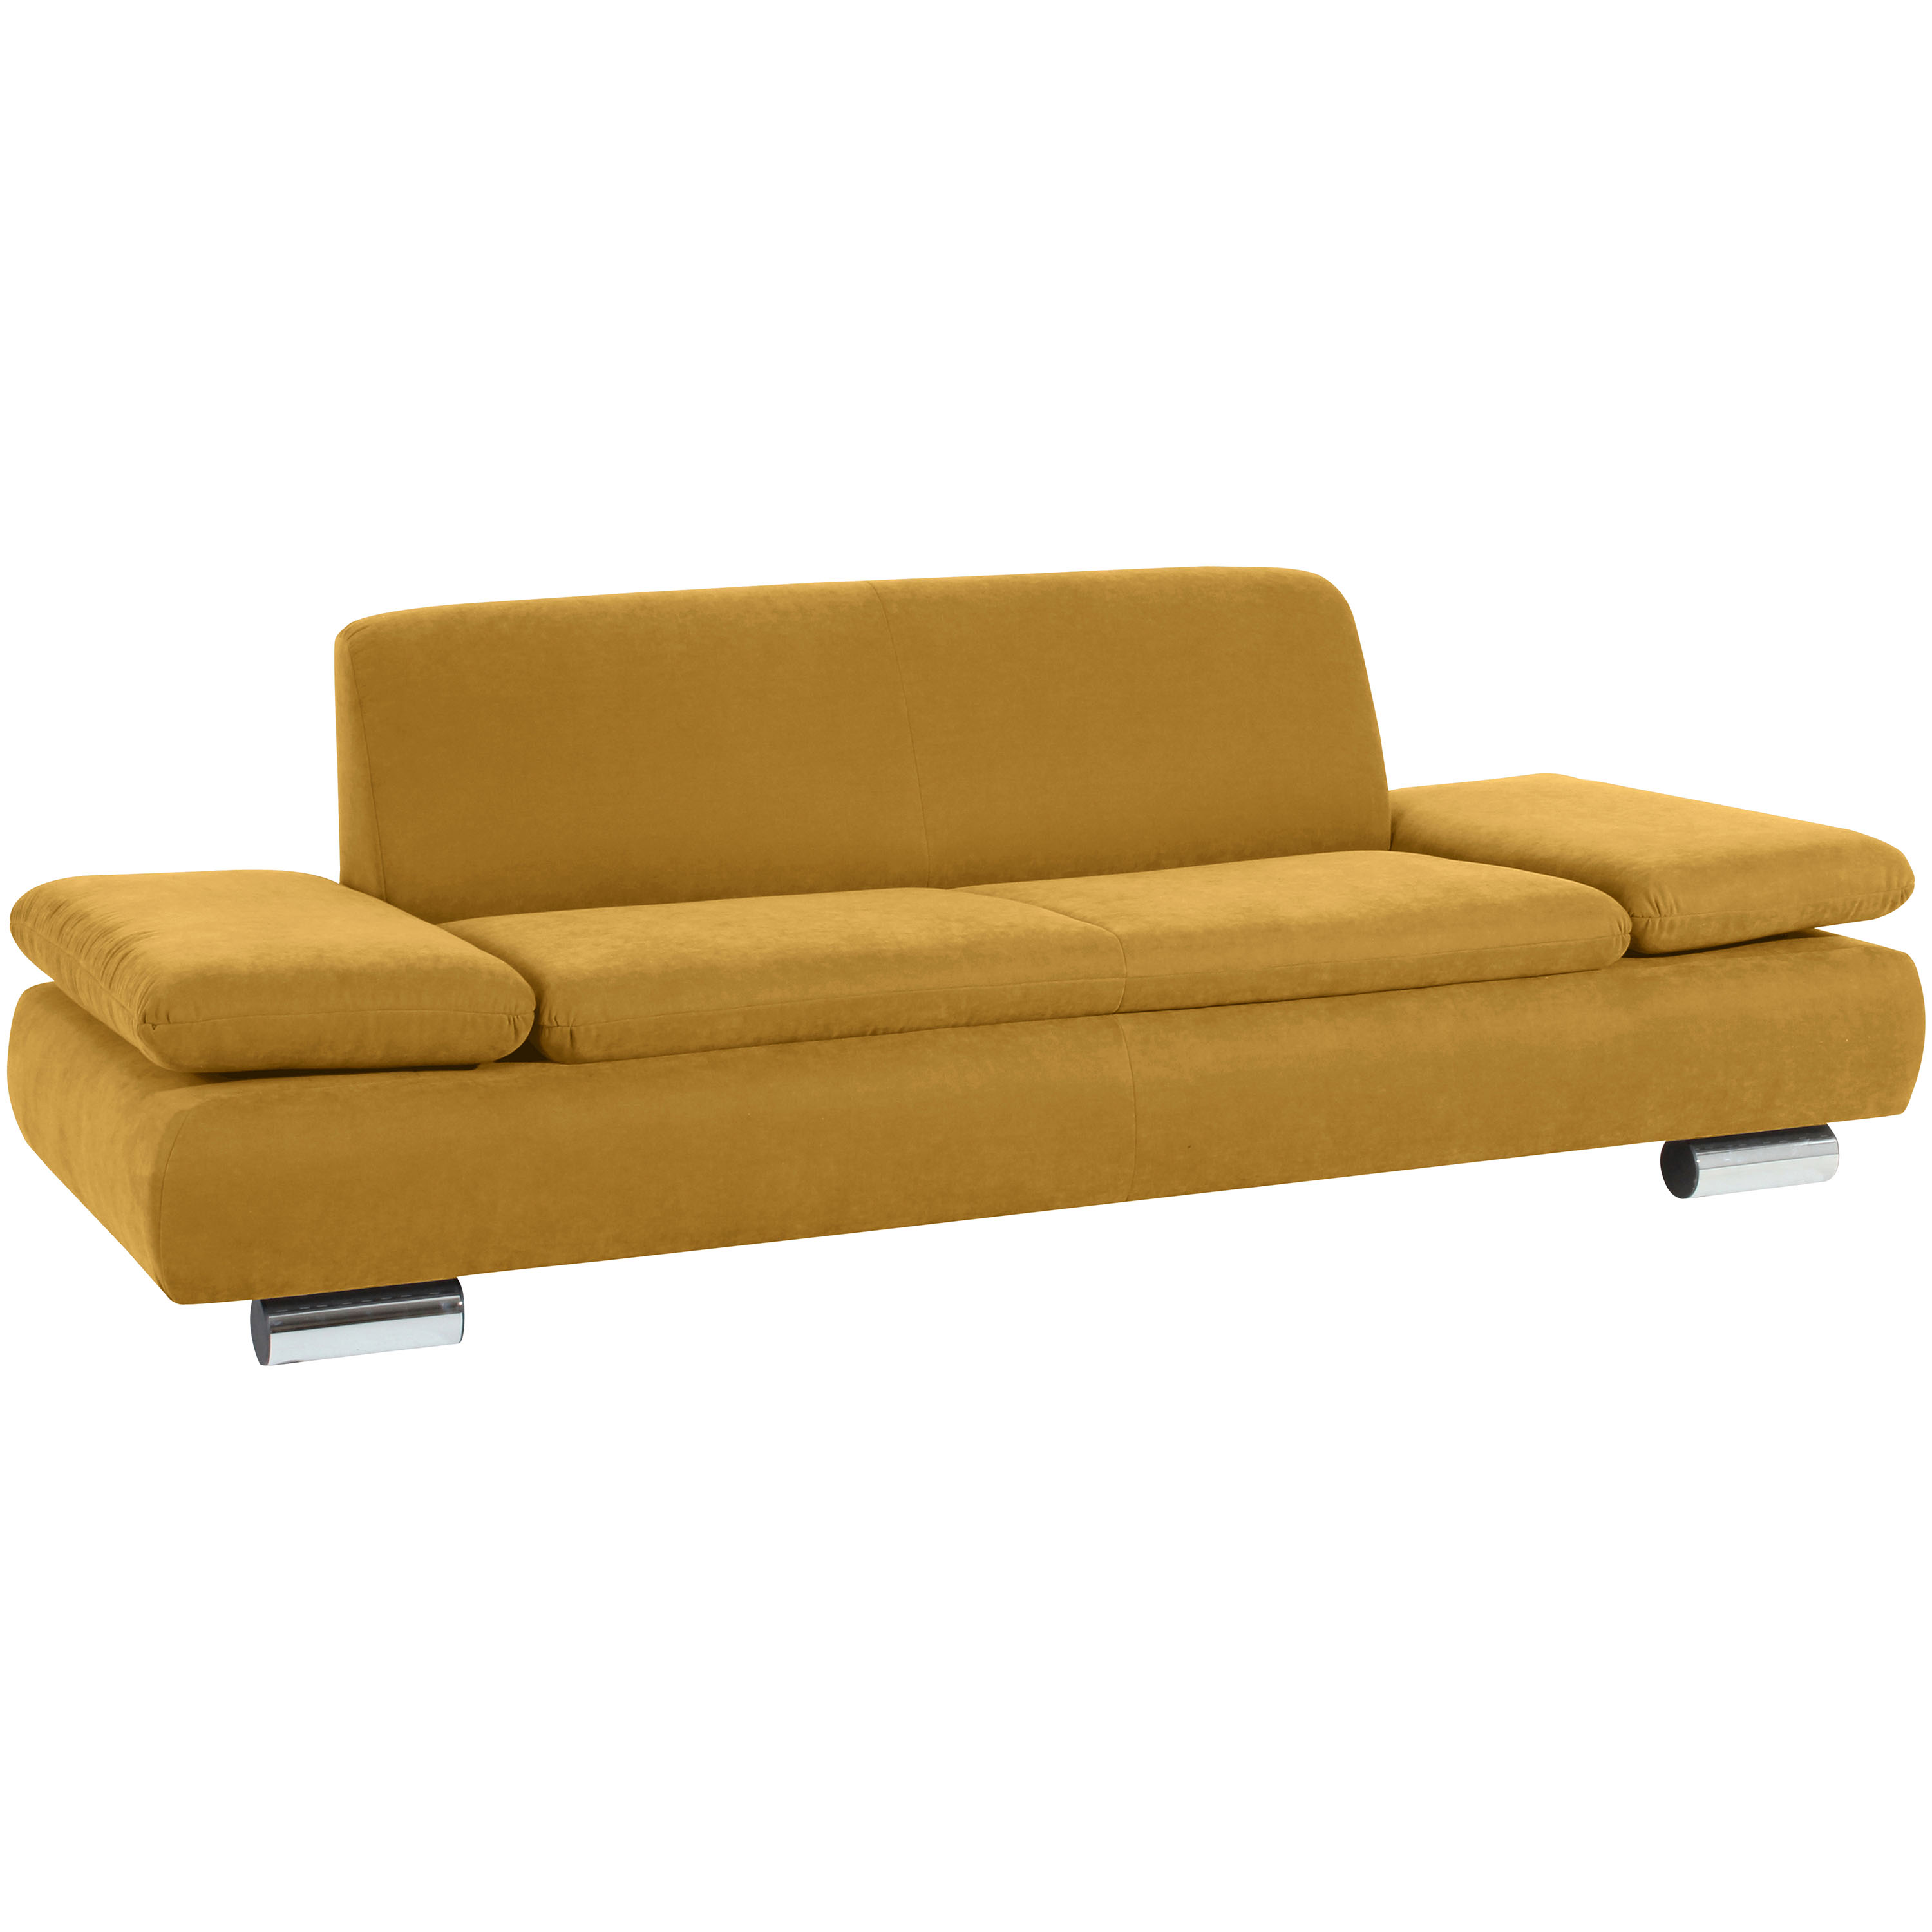 formschönes 2,5-sitzer sofa in mais mit verchromten metallfüssen